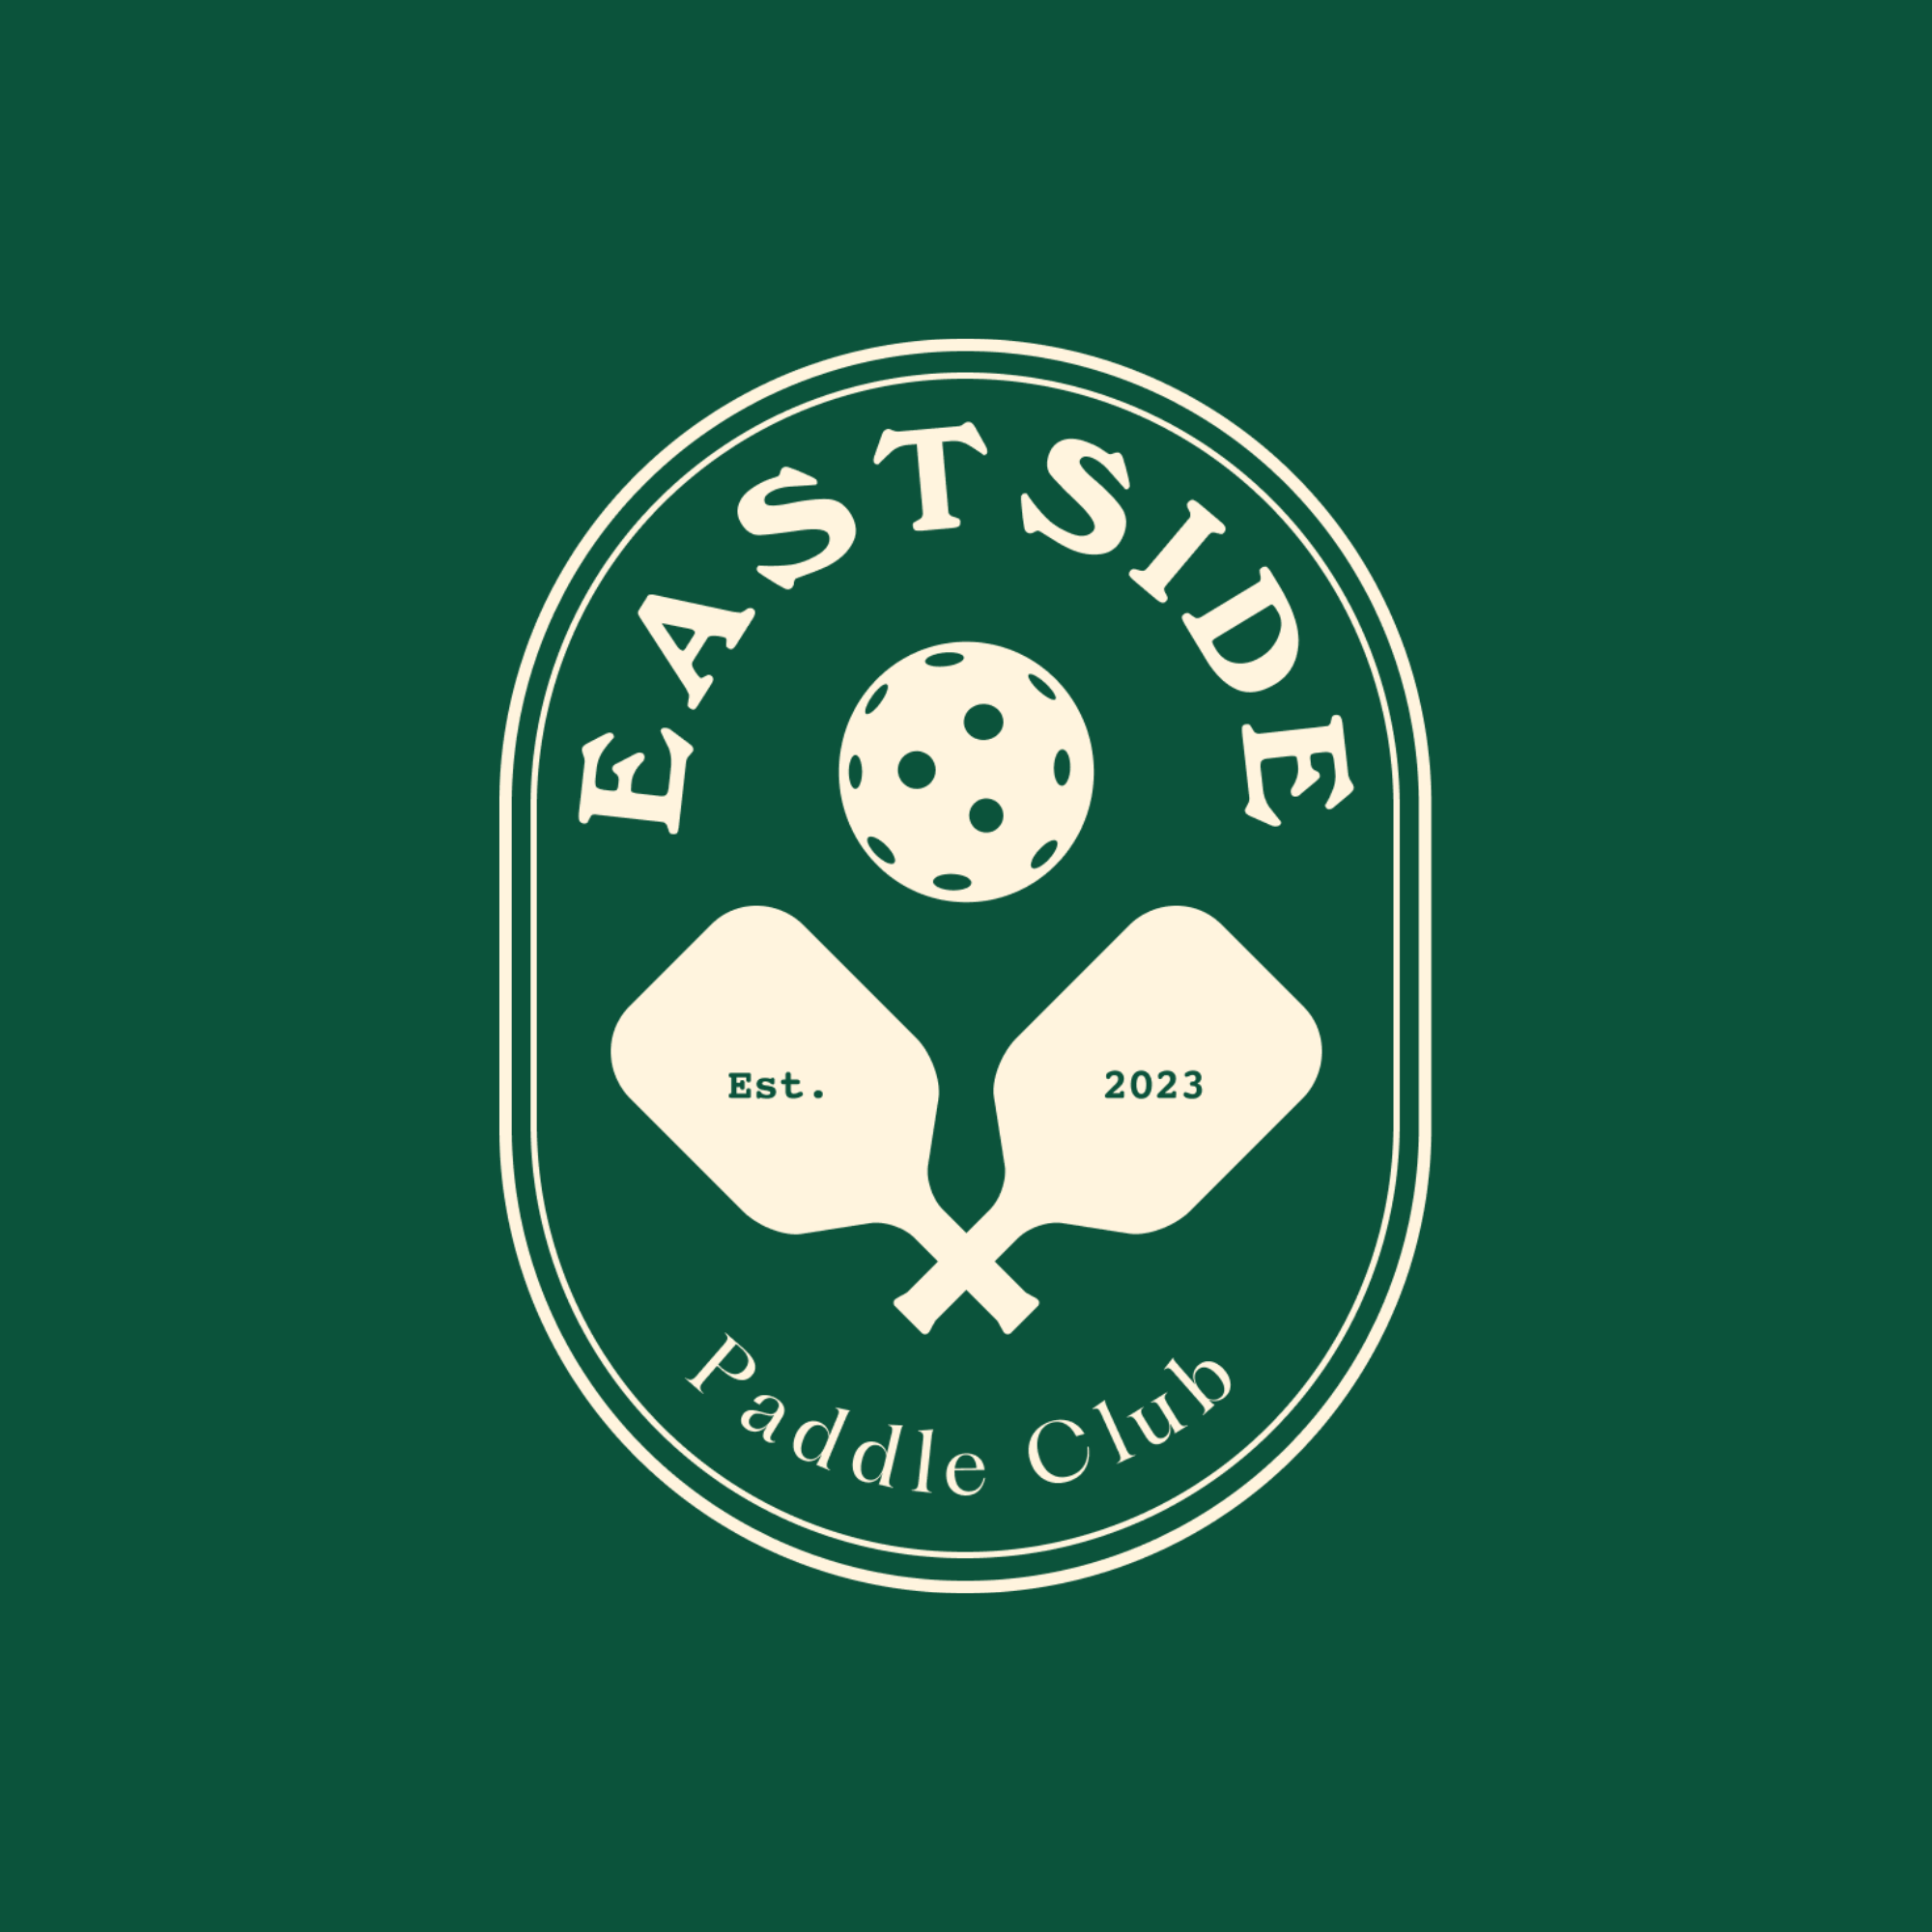 Eastside Paddle Club